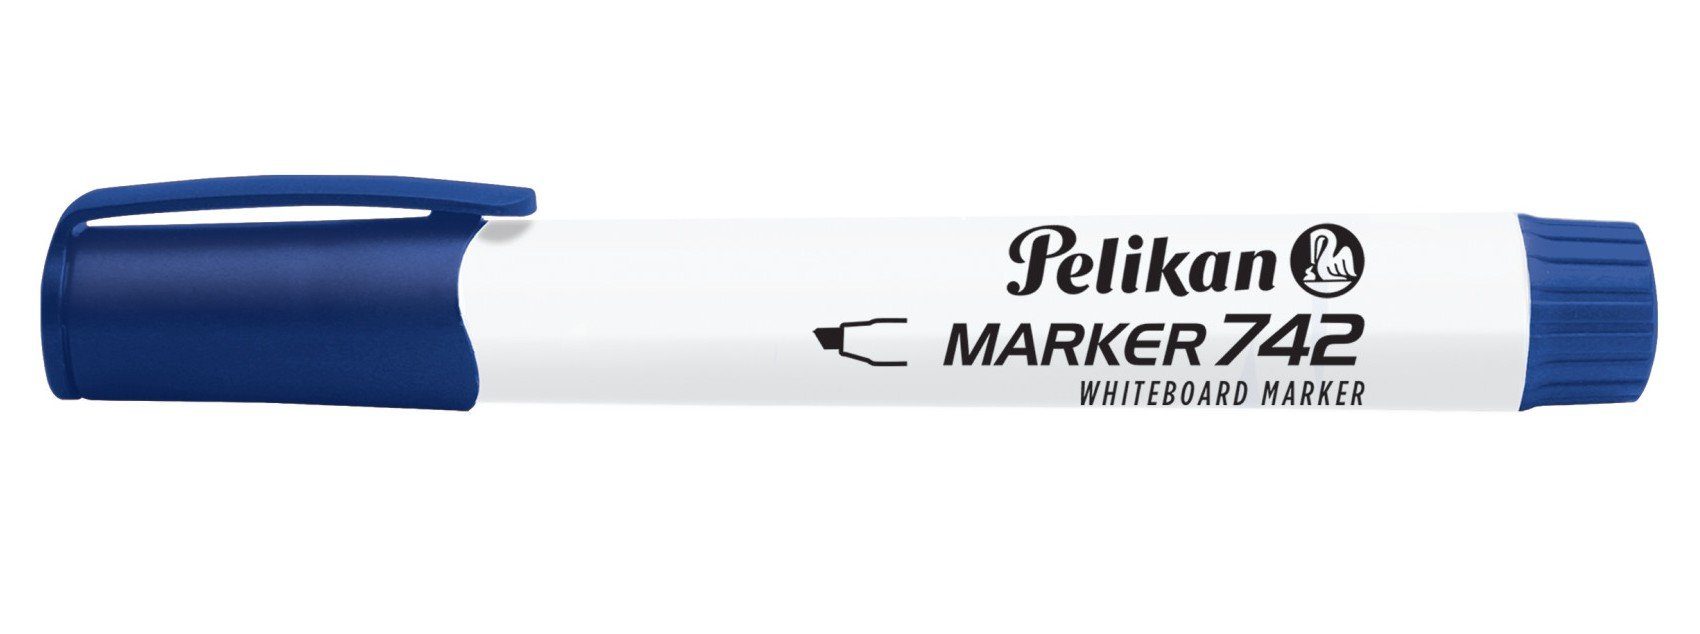 blau Pelikan Whiteboard Marker Marker 742 Pelikan